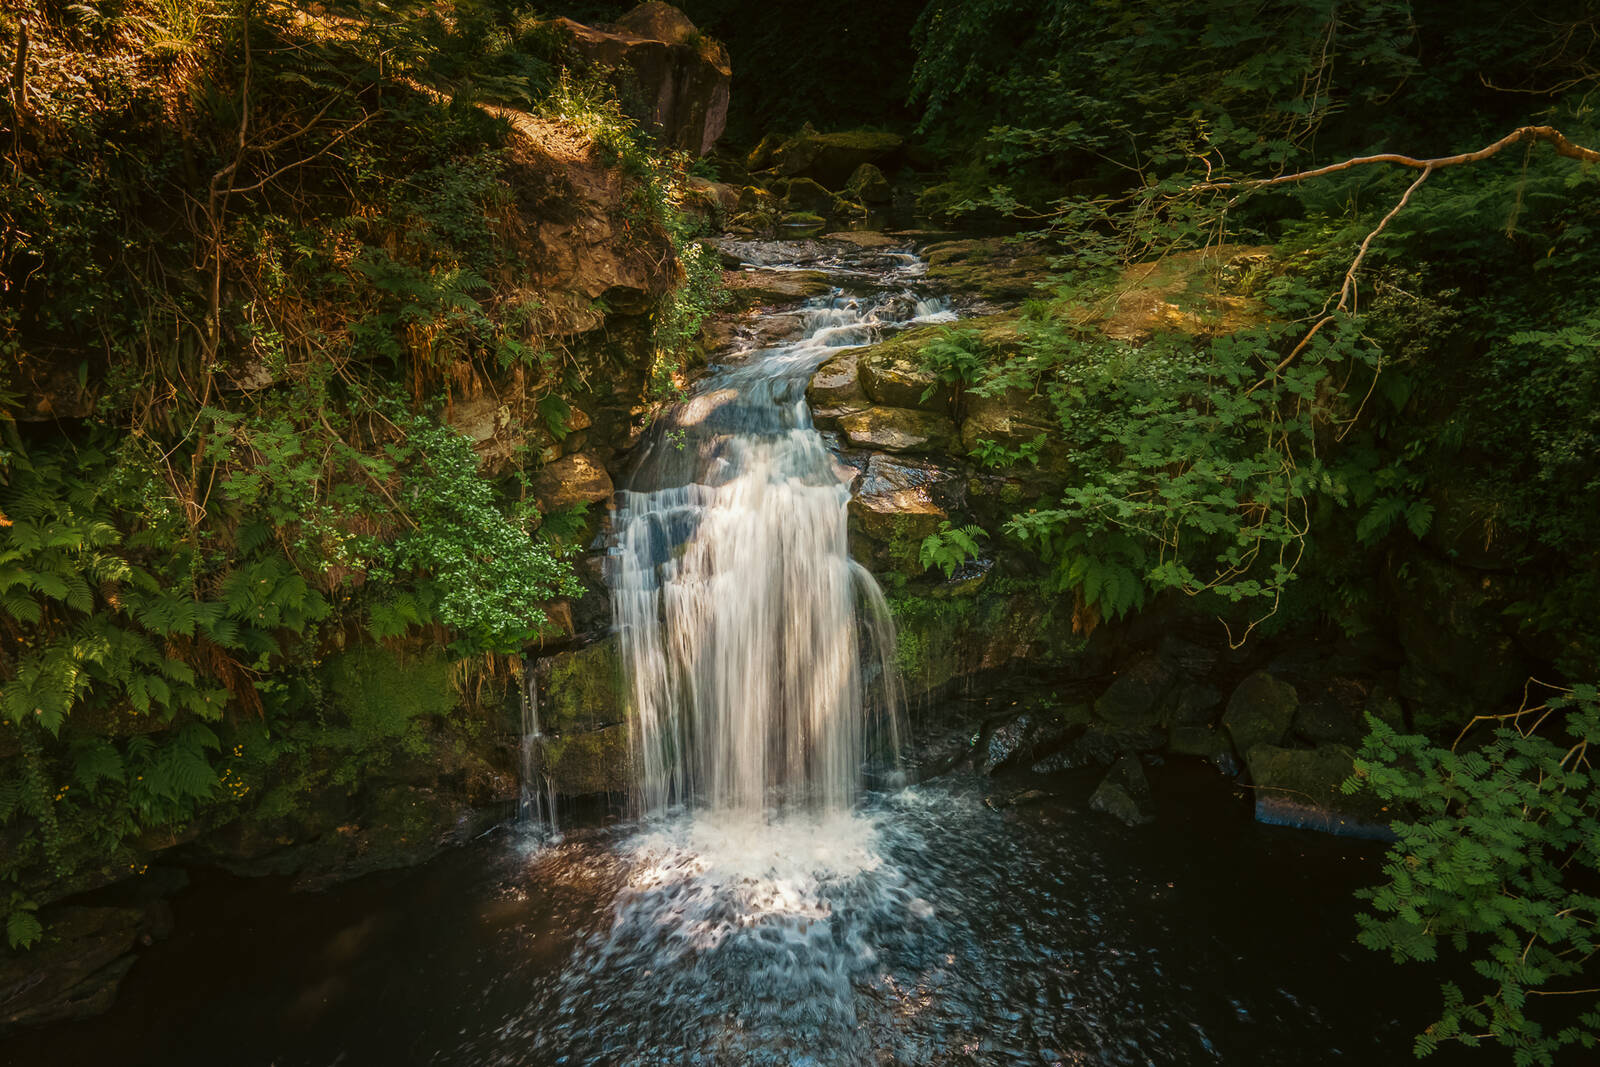 Image of Thomason Foss Waterfall by James Billings.